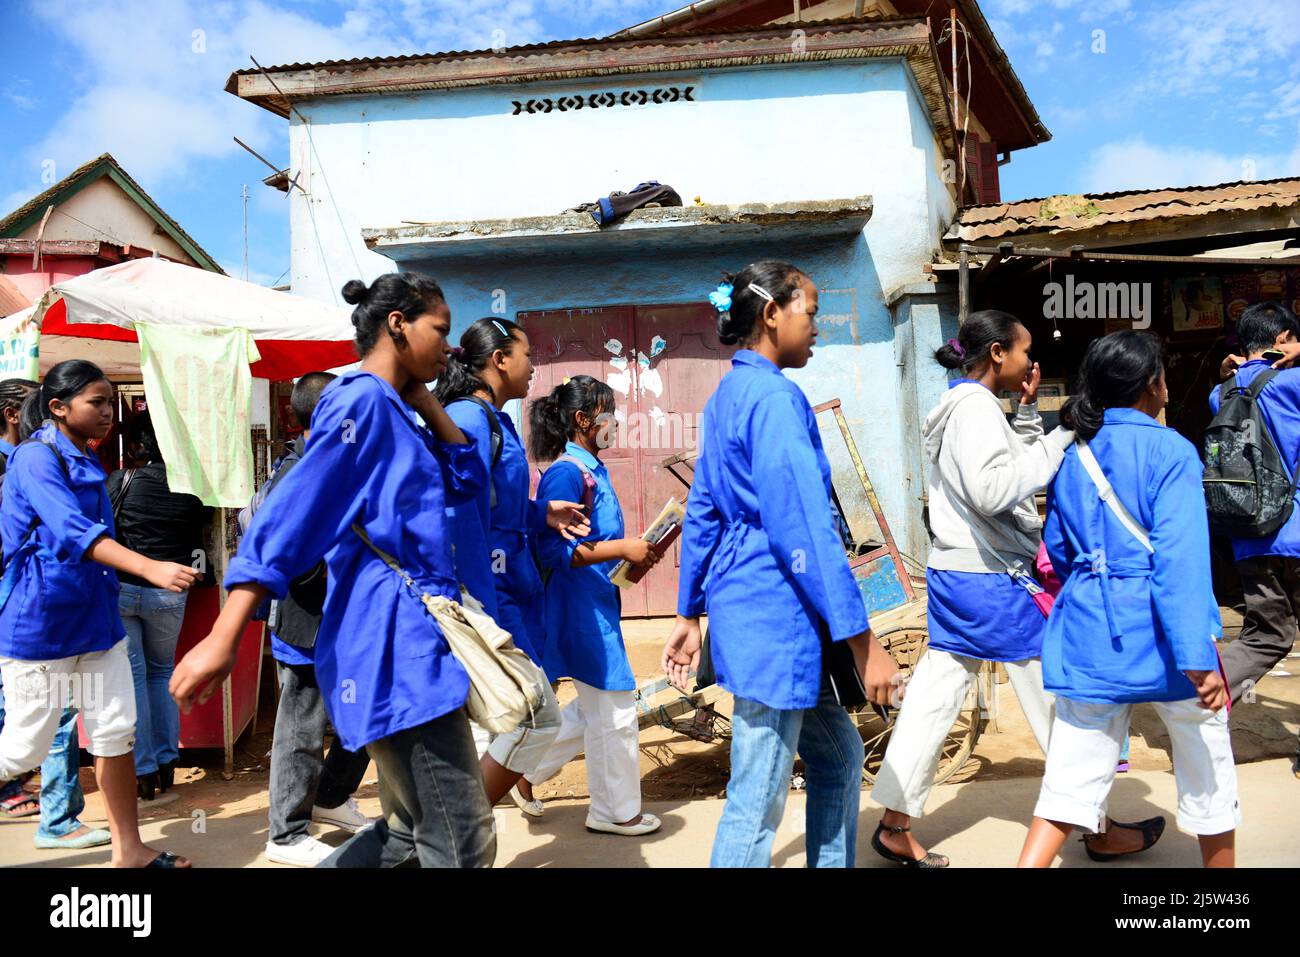 Des écoliers malgaches qui marchent jusqu'à leur domicile. Photo prise dans le quartier d'Ambohimanga près d'Antananarivo, Madagascar. Banque D'Images